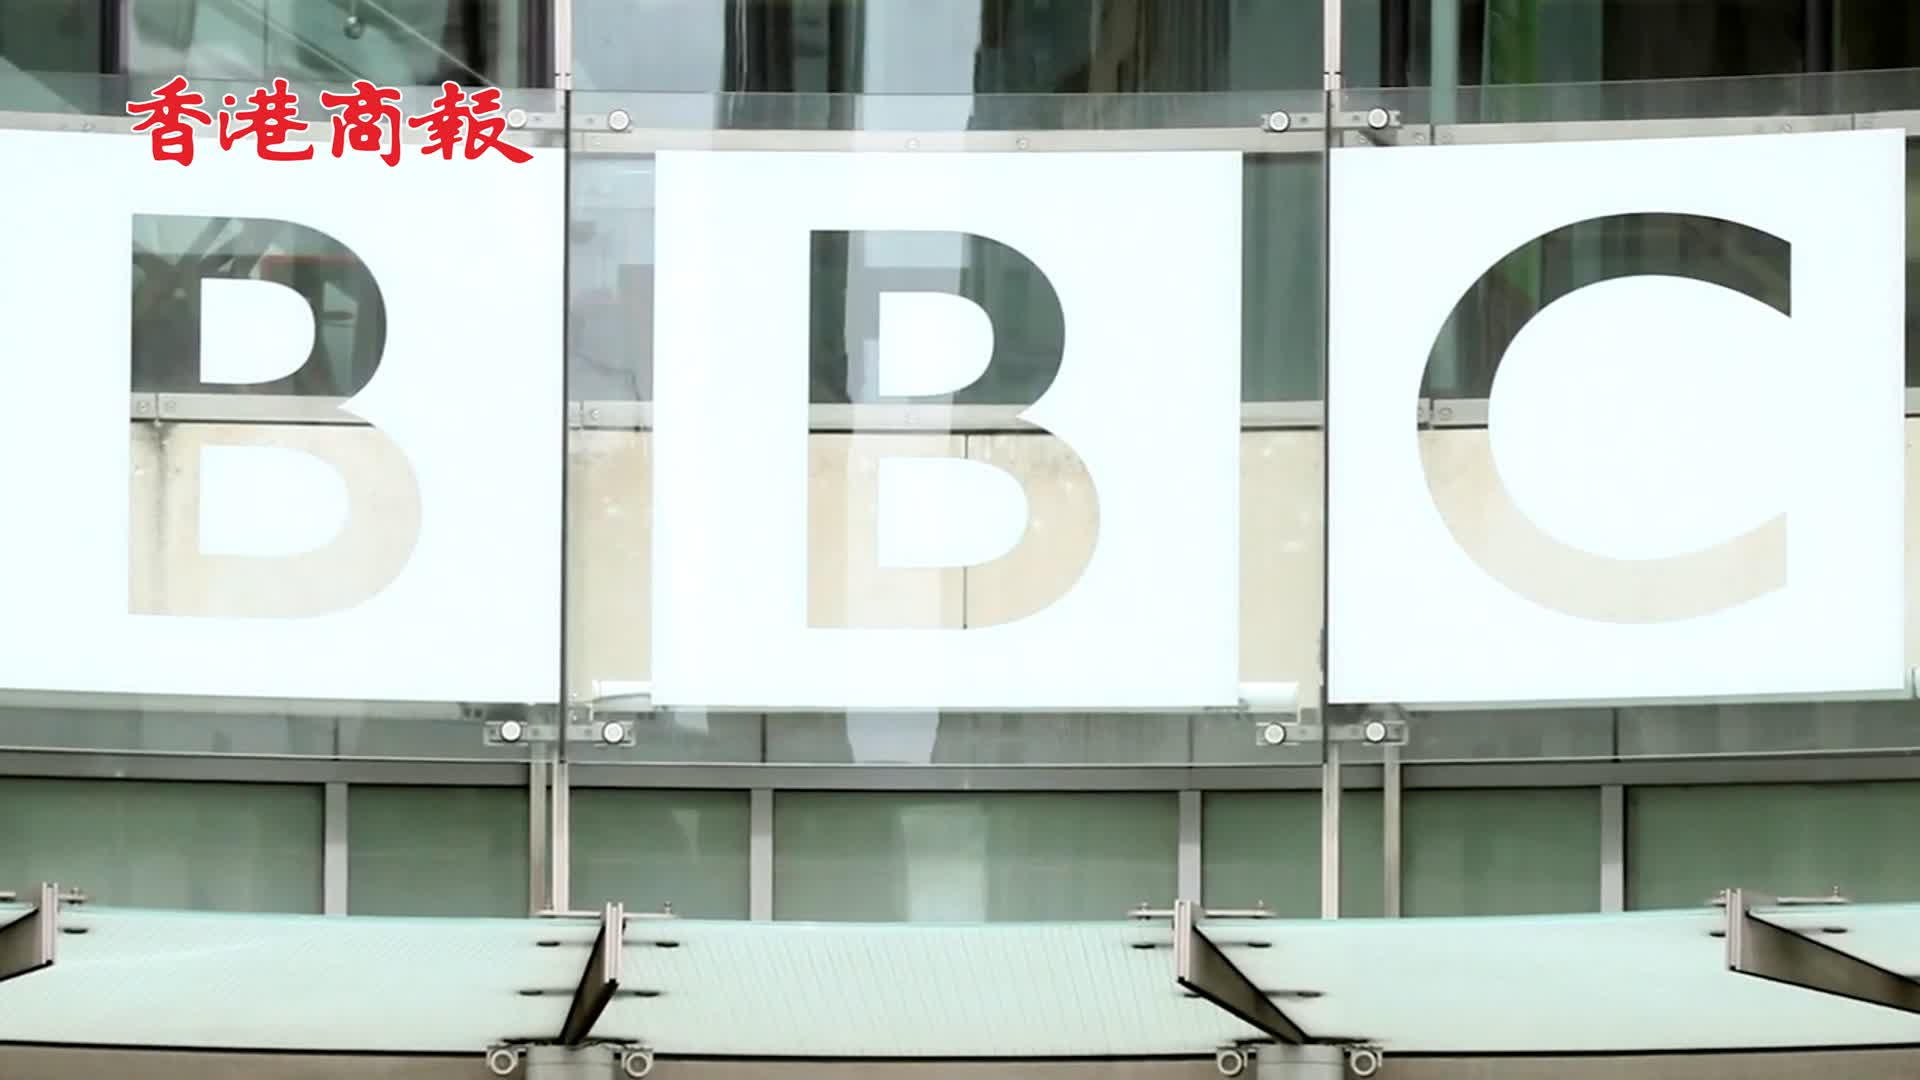 有片丨稅務部門搜查BBC駐印度辦公室 曾因製作莫迪紀錄片激怒印度